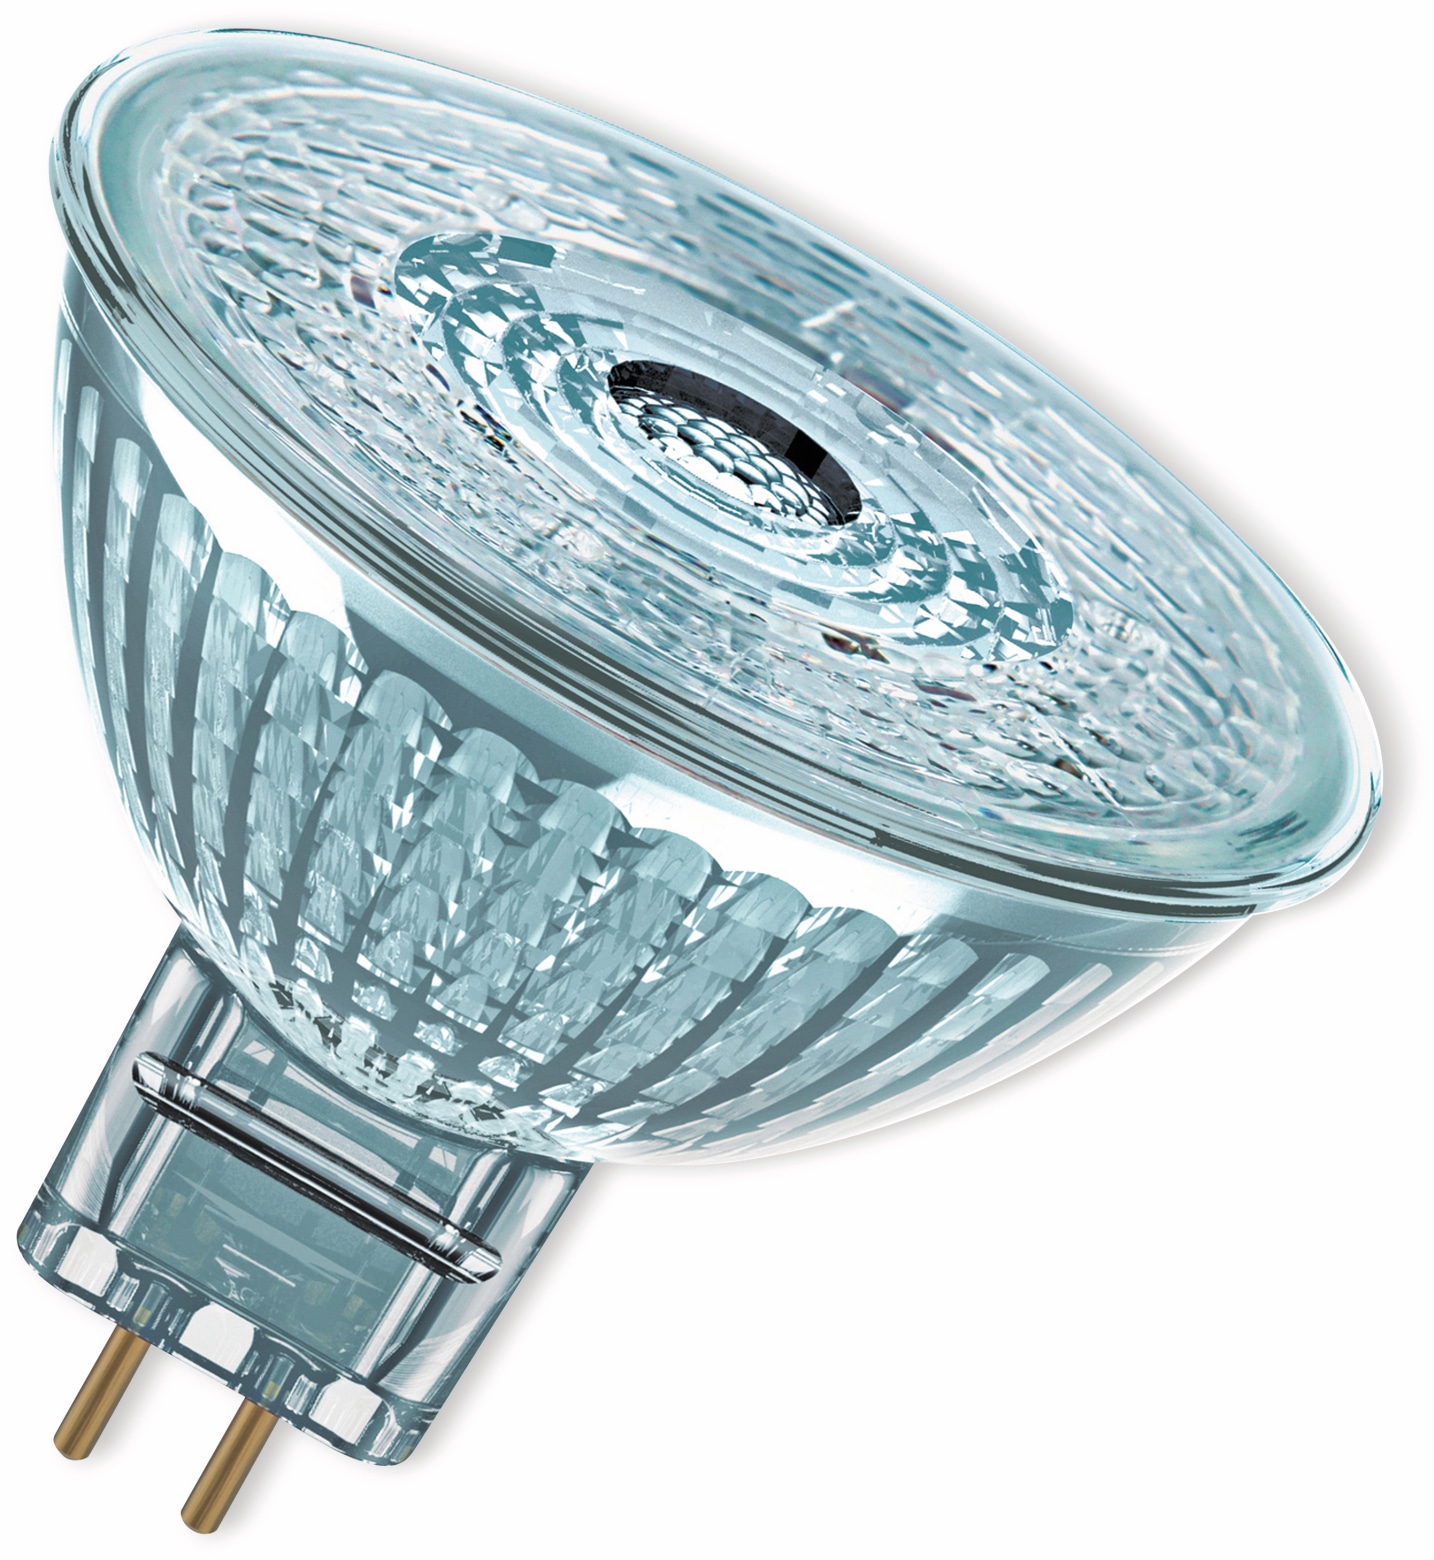 OSRAM LED-Lampe, GU5.3, 8 W, 621 lm, 4000 K